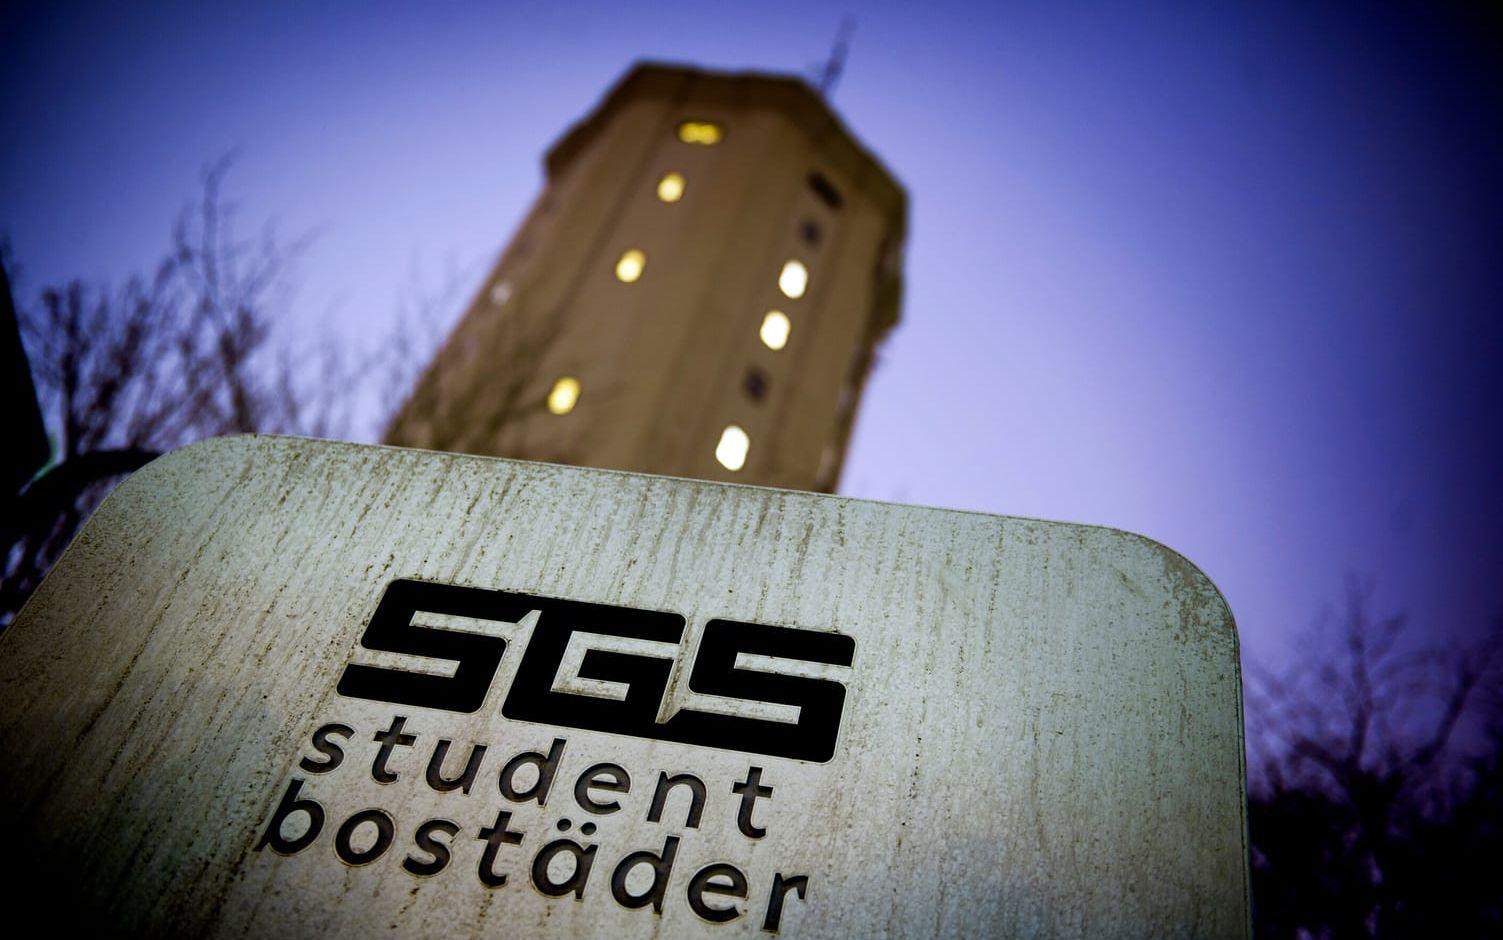 Enligt Magnus Bonander behöver Göteborg ha ytterligare 7 000 studentbostäder fram till 2026 för att täcka behovet. Bild: Roin Aron Olsson